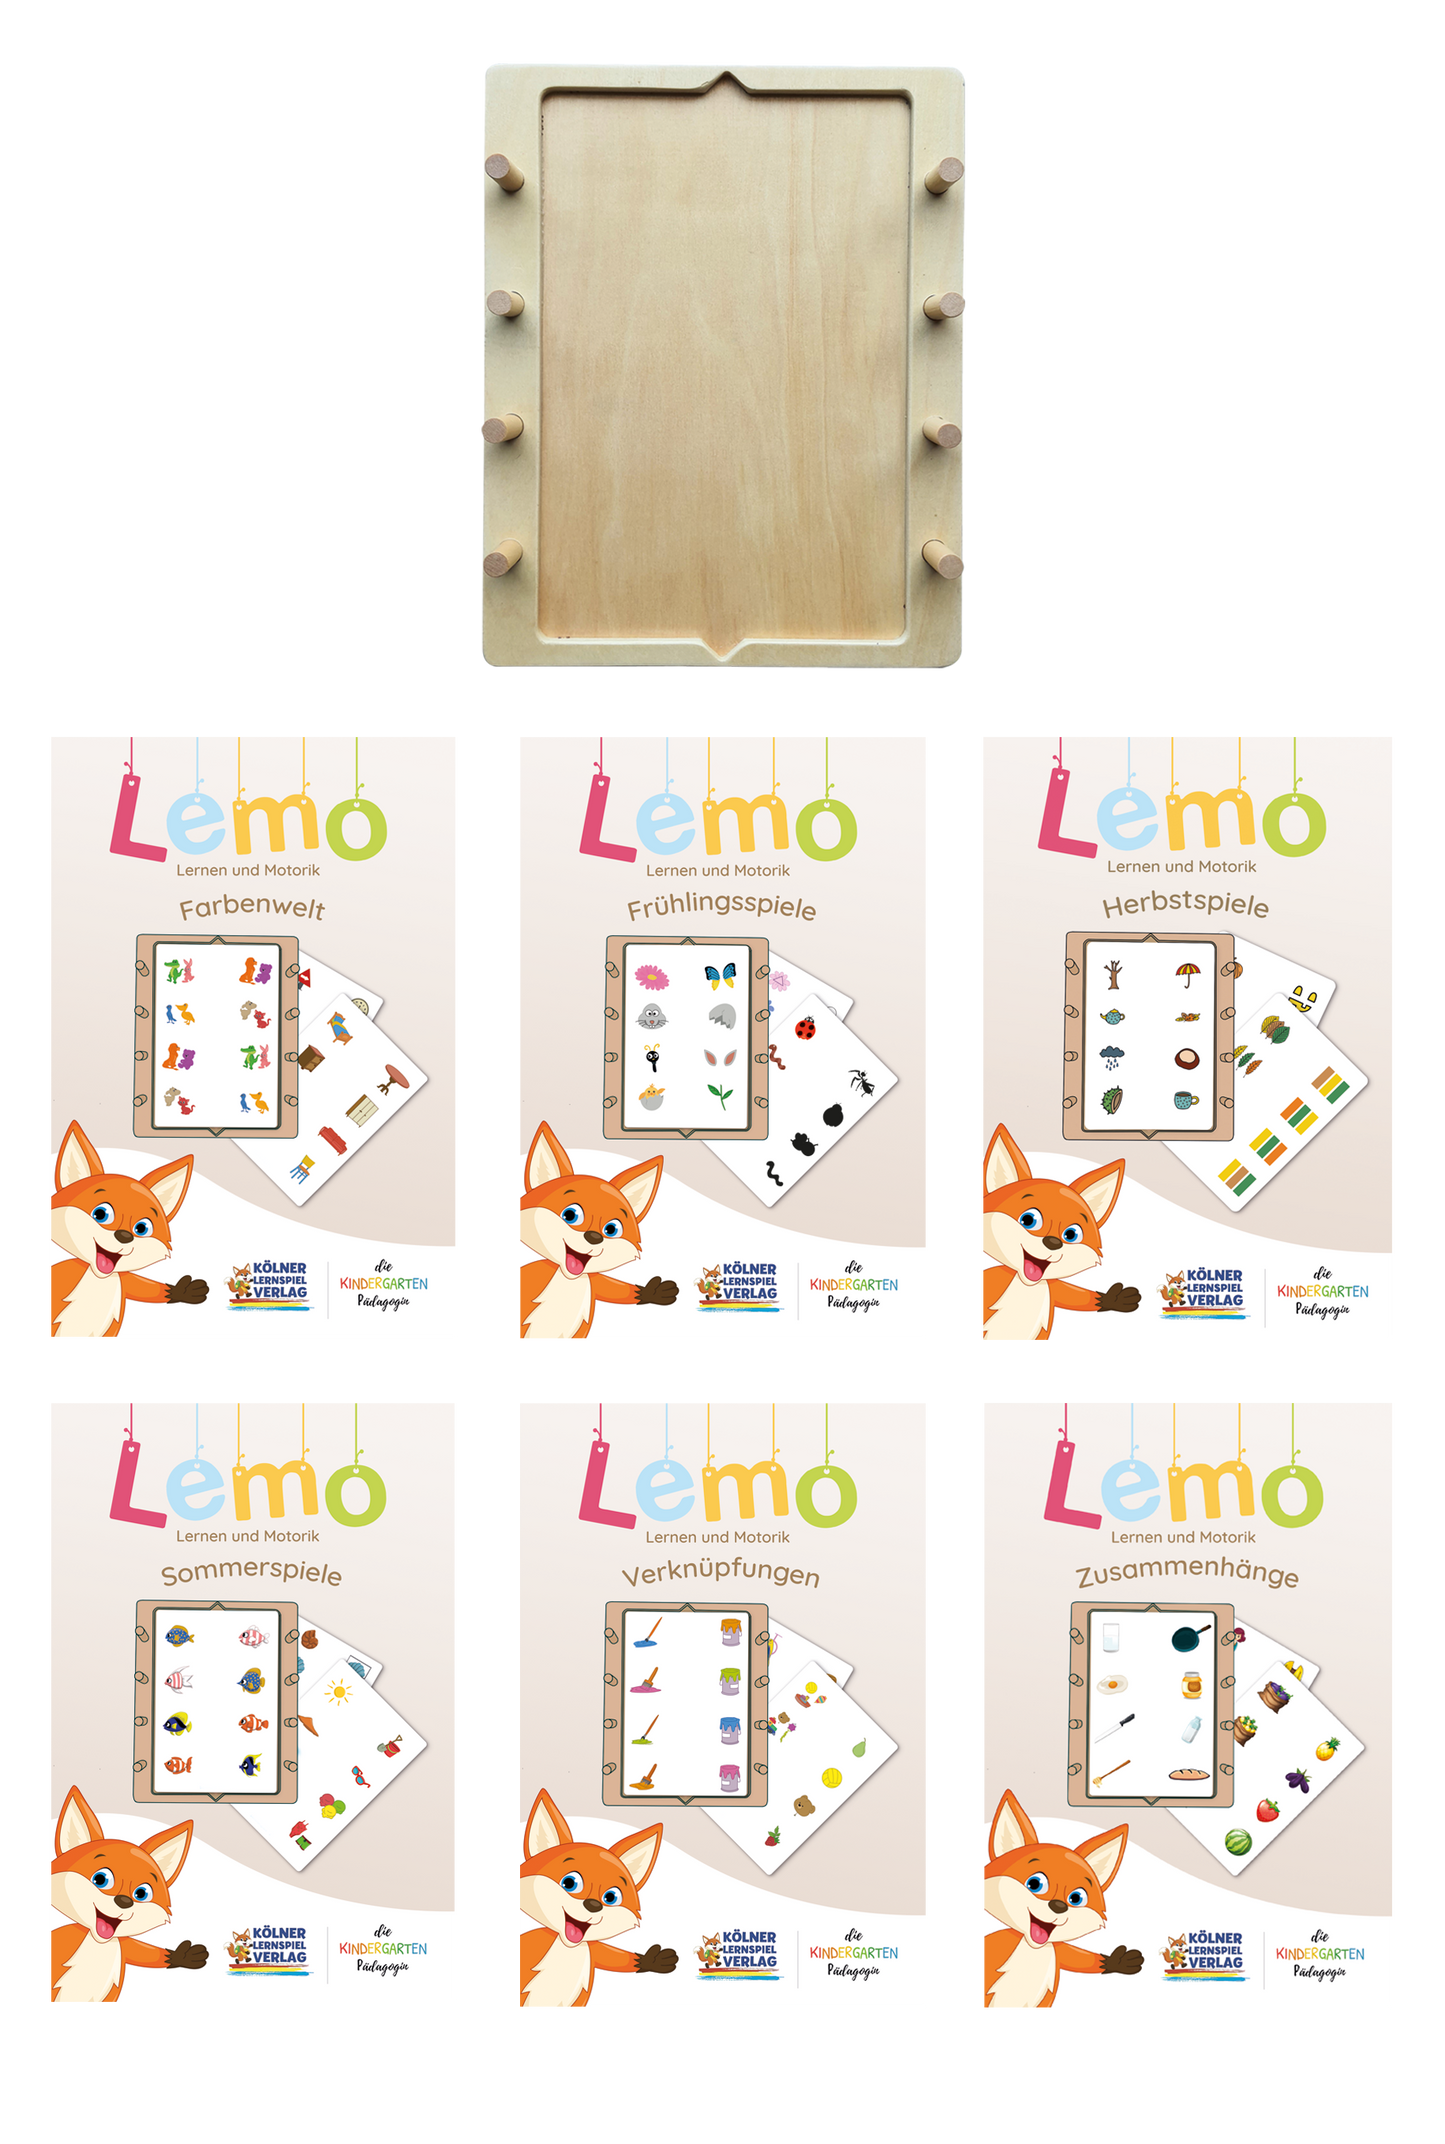 Lemo starter set from 4 years: wooden frame + 5 decks of cards